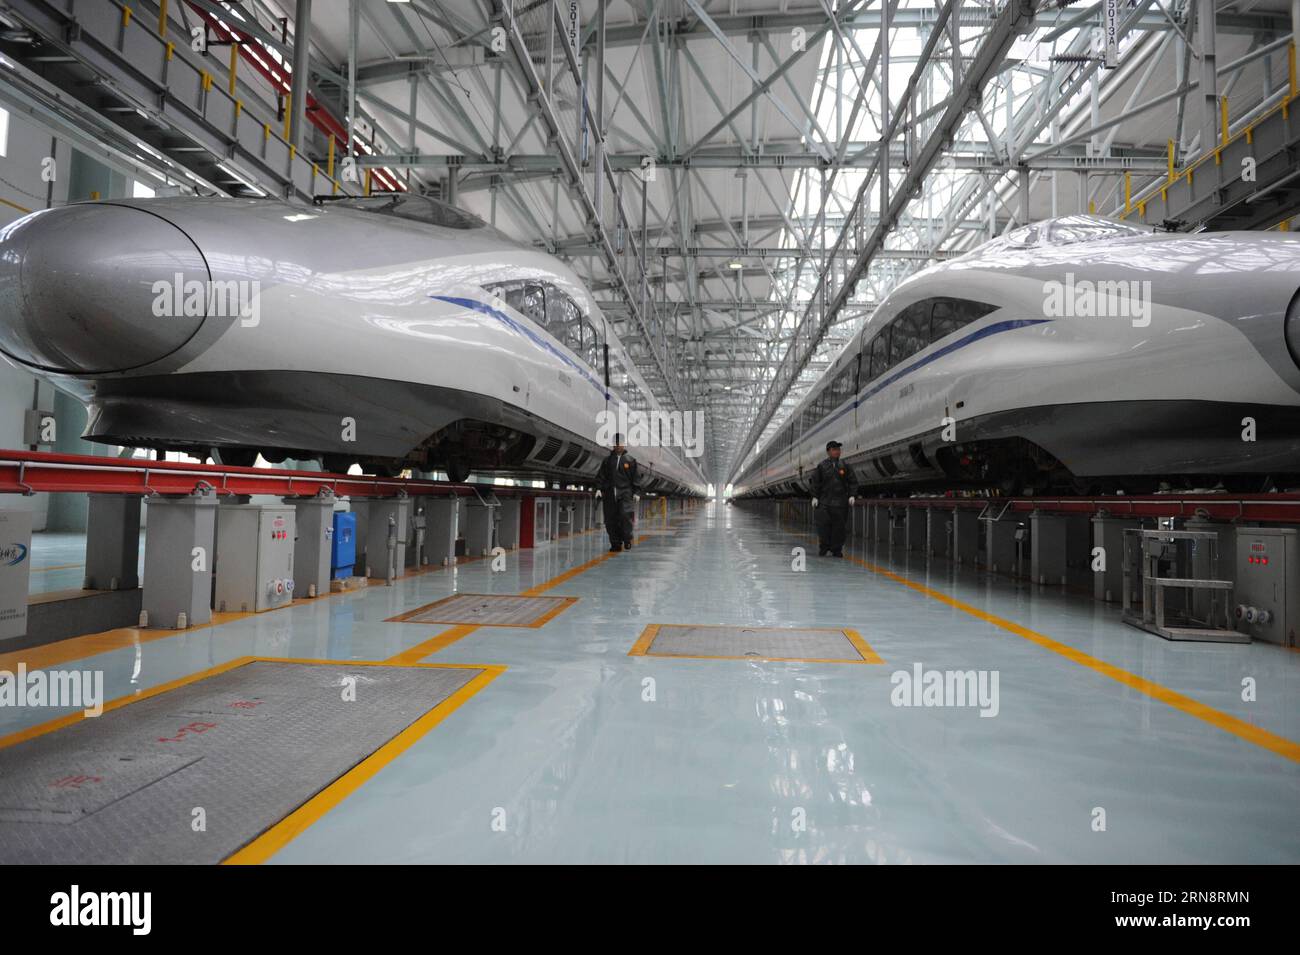 (151104) -- GUIYANG, 2015 -- Techniker gehen an zwei CRH380A-Zügen in einem Wartungszentrum des Eisenbahnabschnitts Guiyang, Provinz Guizhou im Südwesten Chinas, 12. Juni 2015 vorbei. Der Eisenbahnbau in Guizhou erlebte eine rasche Entwicklung während der zwölften Fünfjahresplanperiode Chinas. Die Eisenbahnmeilen der Provinz haben sich bis 2015 auf über 3.000 Kilometer erweitert, darunter 700 Kilometer Hochgeschwindigkeitsbahn. )(mcg) CHINA-GUIZHOU-RAILWAY-DEVELOPMENT (CN) OuxDongqu PUBLICATIONxNOTxINxCHN Guiyang 2015 Techniker laufen an zwei CRH380A Zügen IN einem Wartungszentrum des Guiyang Railway Section Southw vorbei Stockfoto